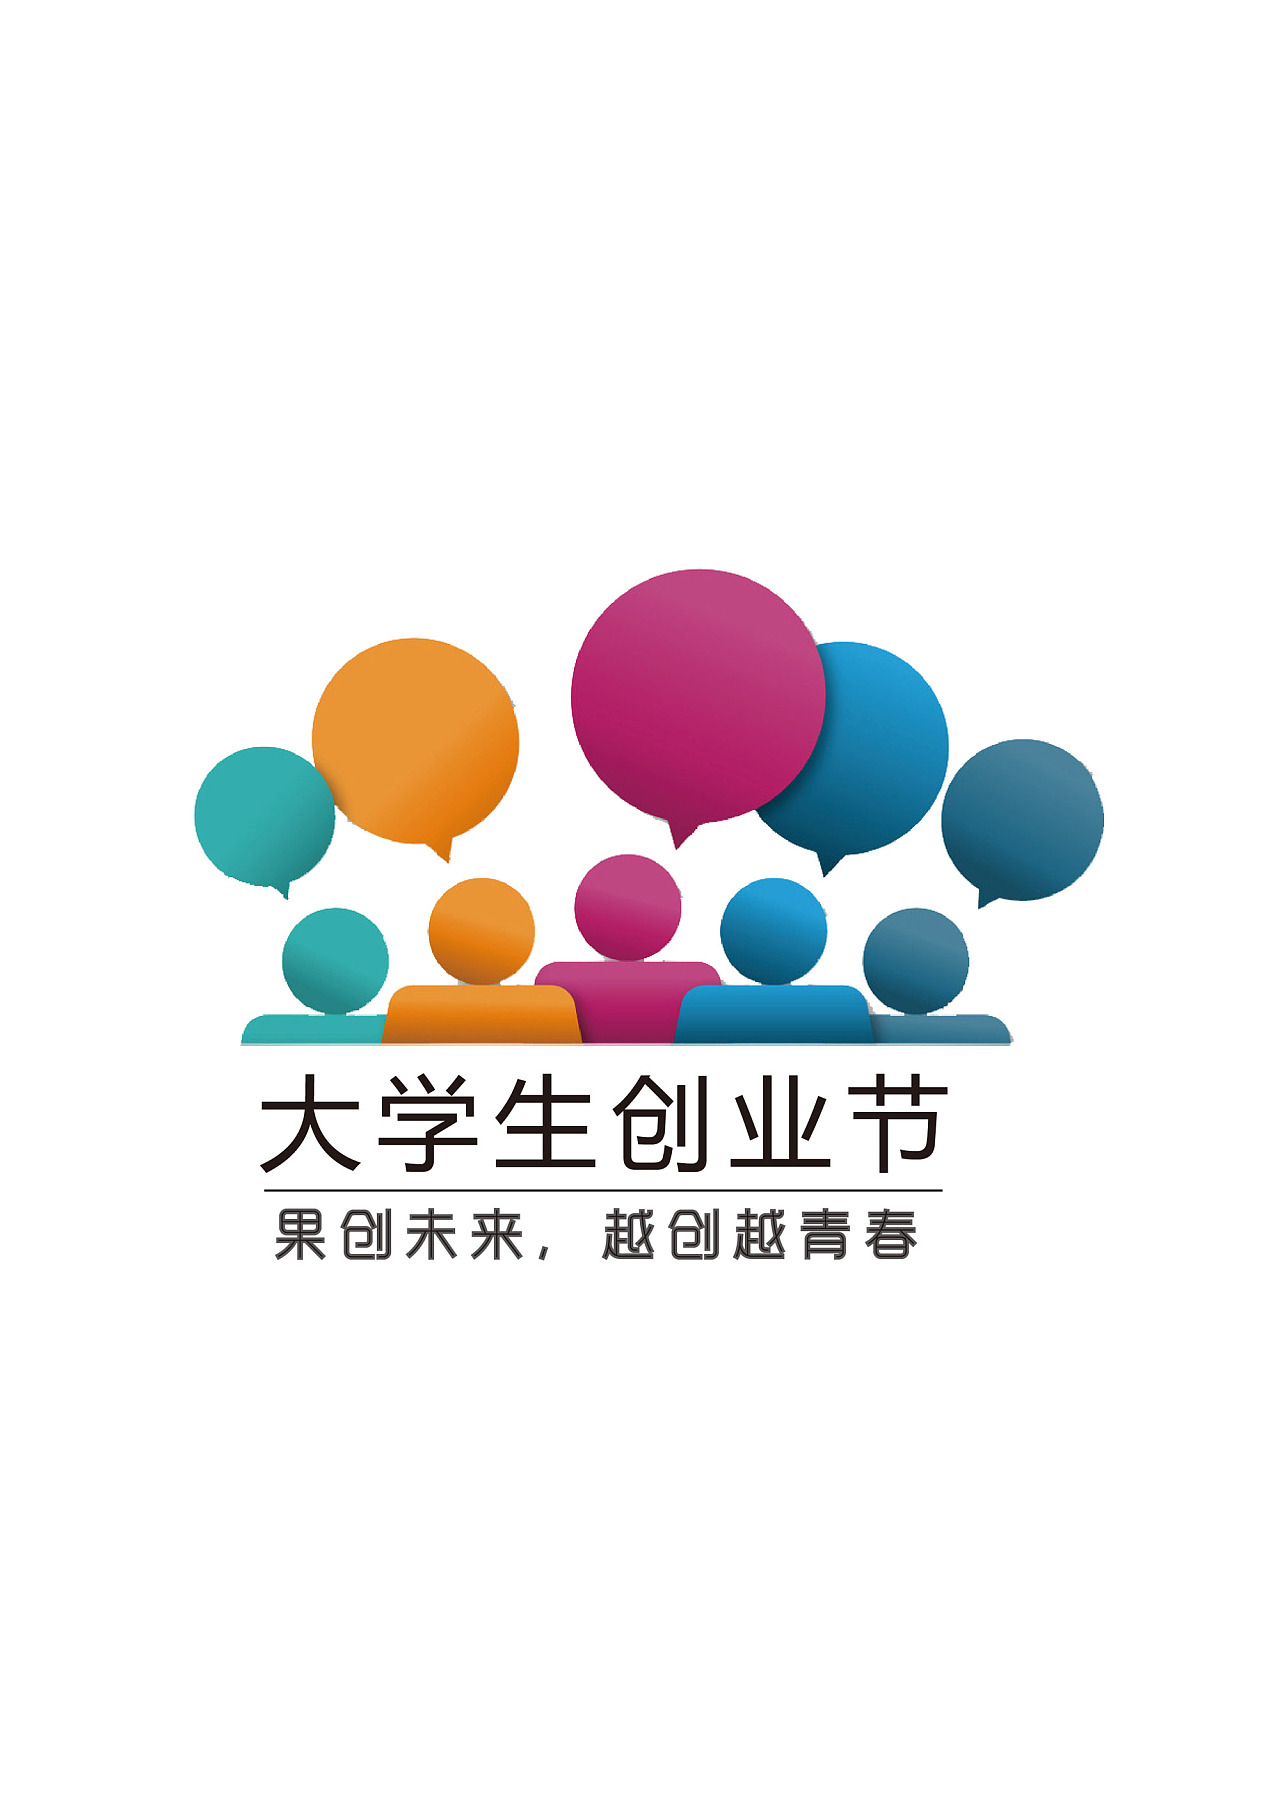 大学生创业节logo